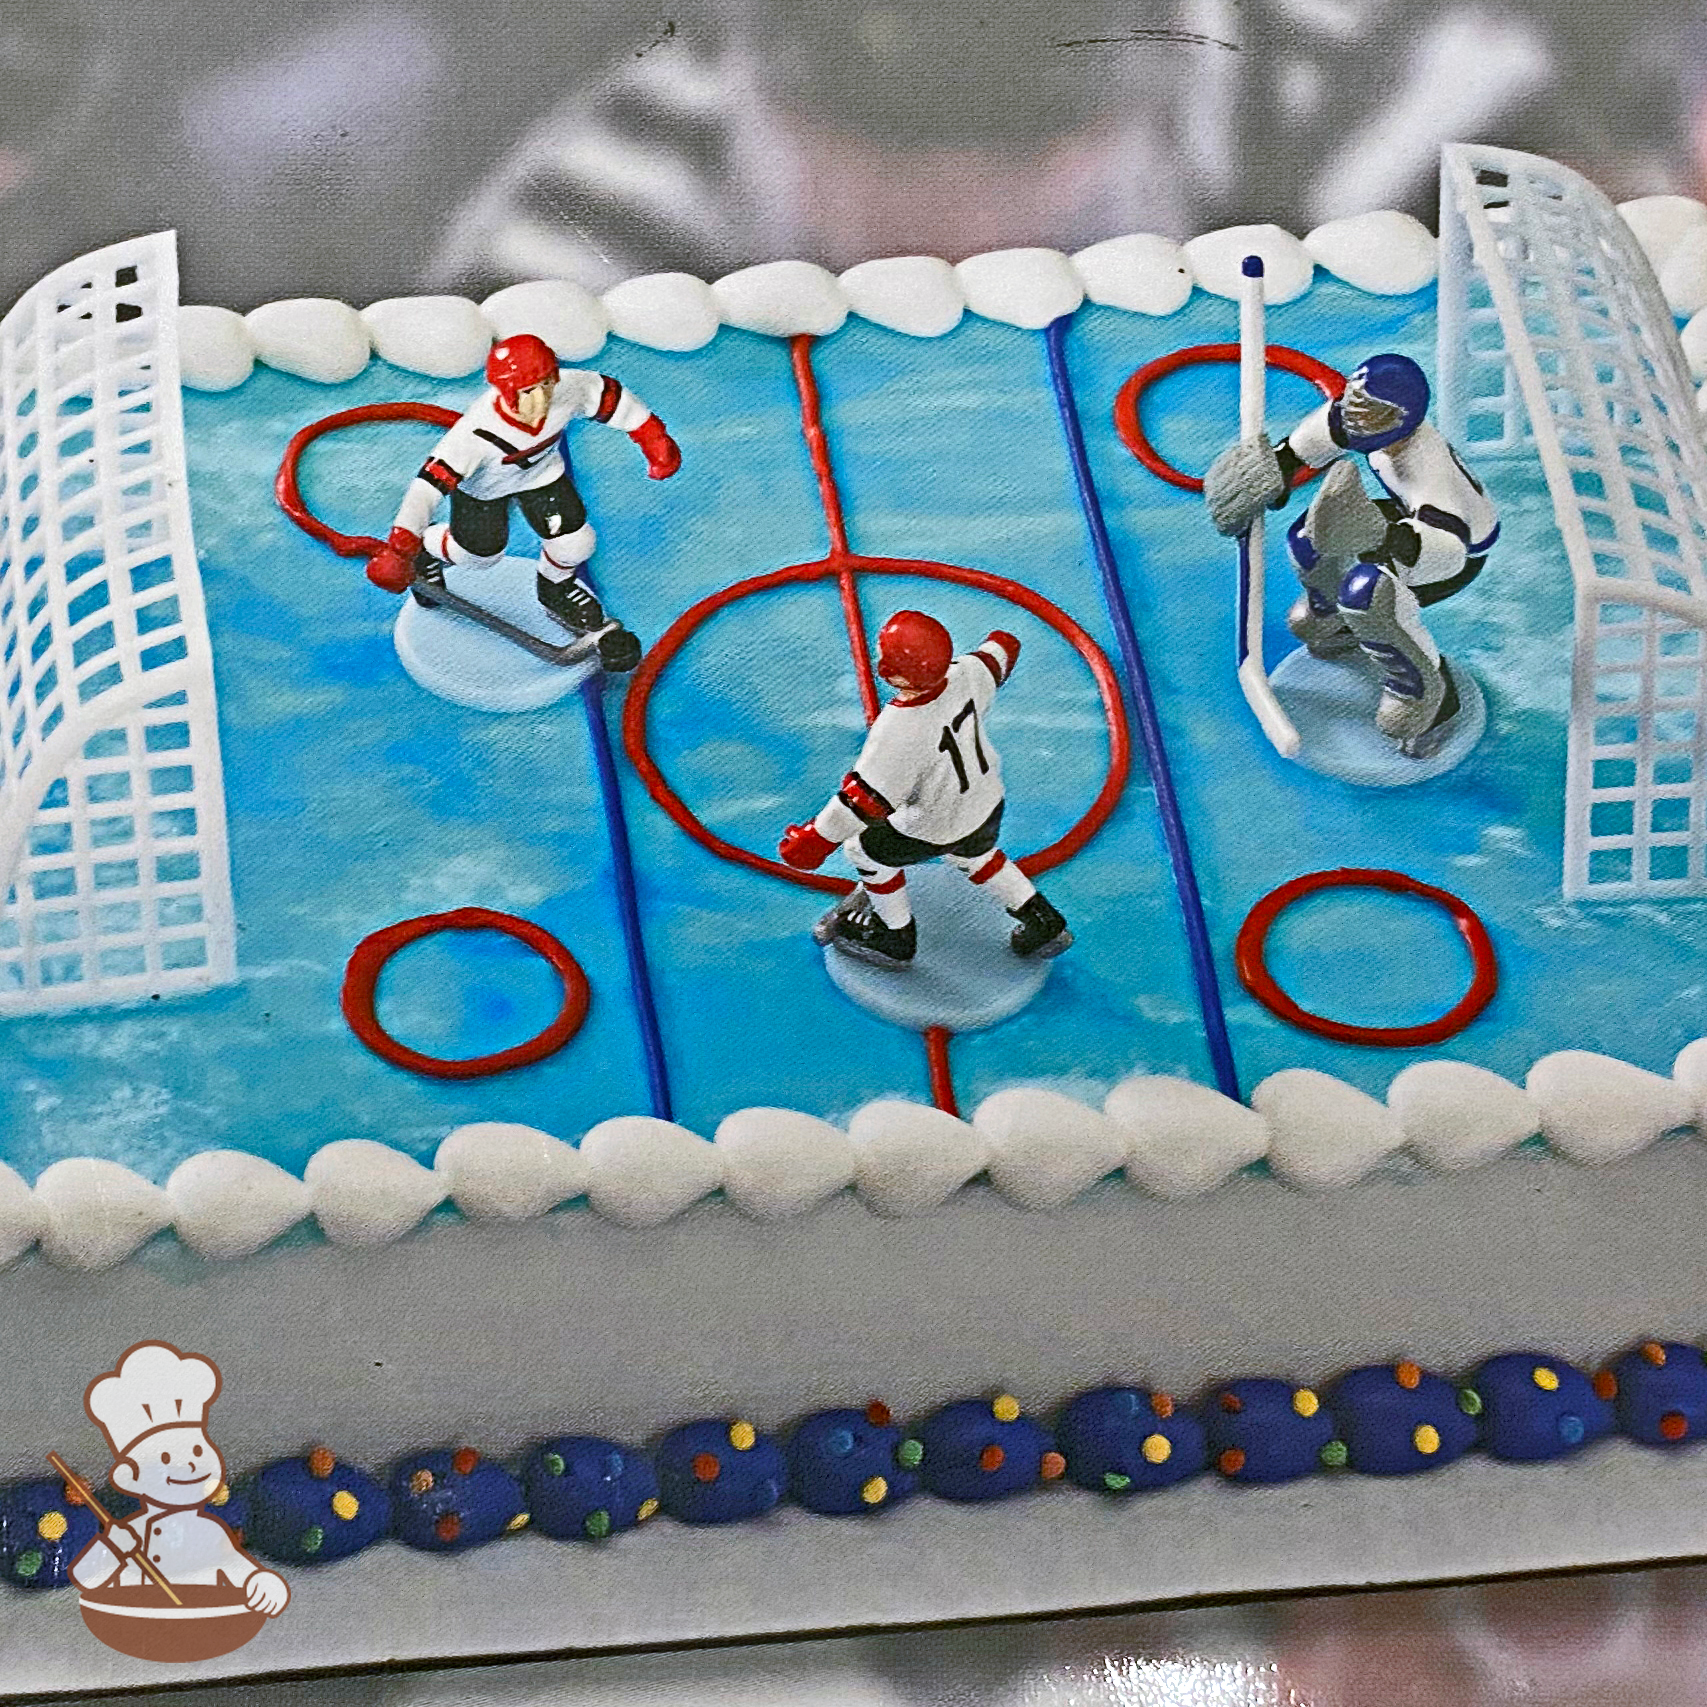 Field Hockey Themed Cake - Cakes.pk